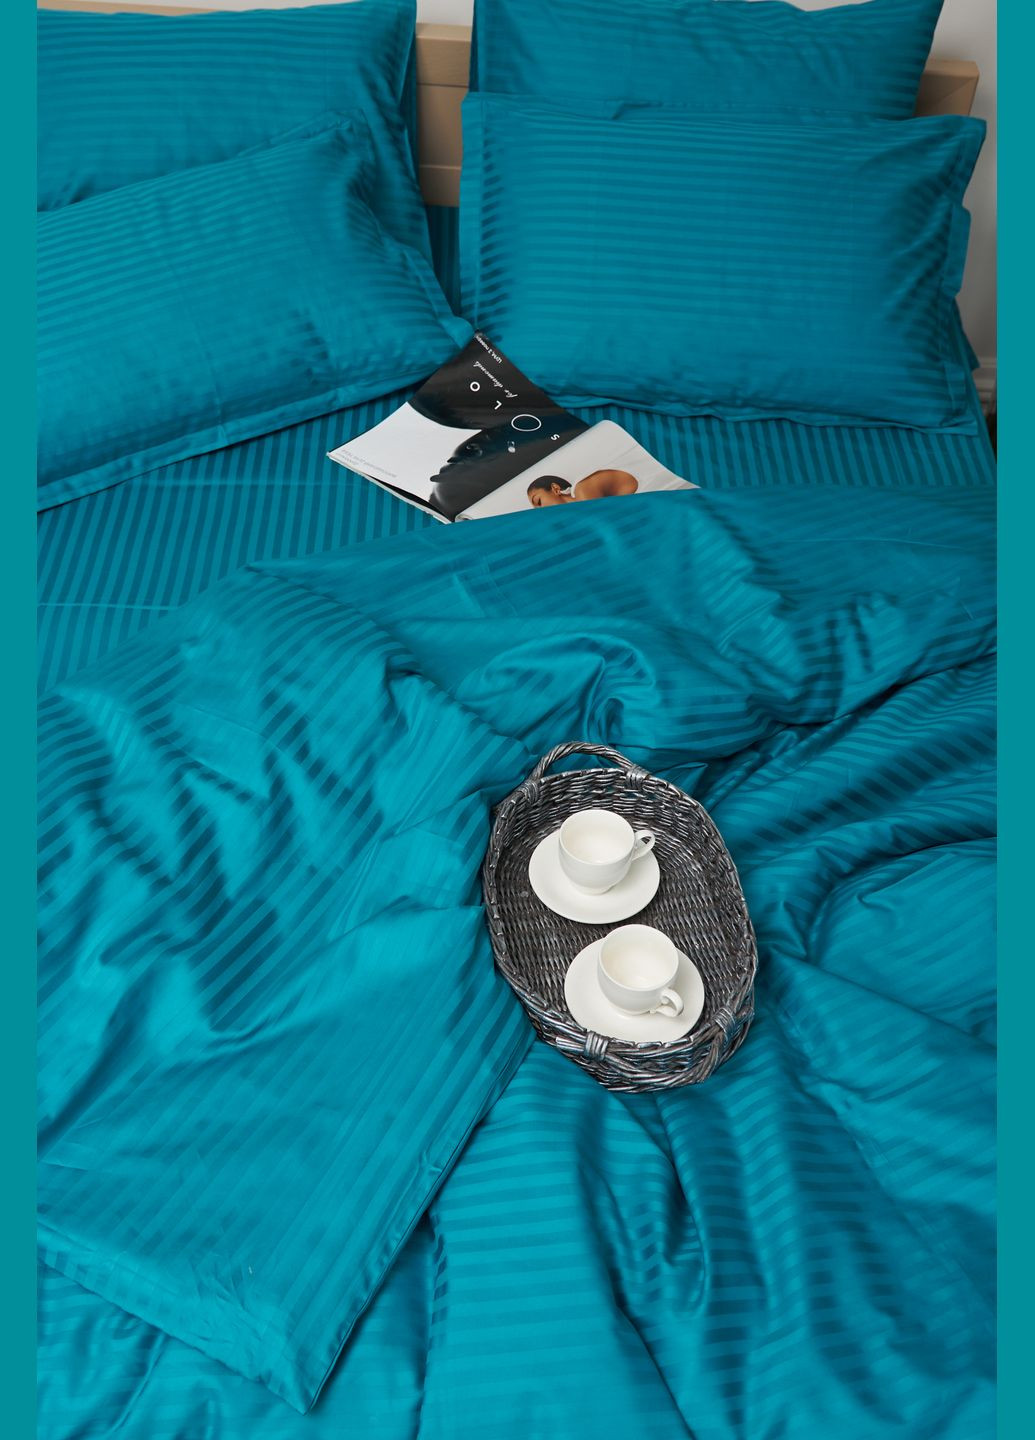 Комплект постельного белья евро 200х220 наволочки 4х50х70 Satin Stripe (MS-820000643) Moon&Star turkish blue (284416305)